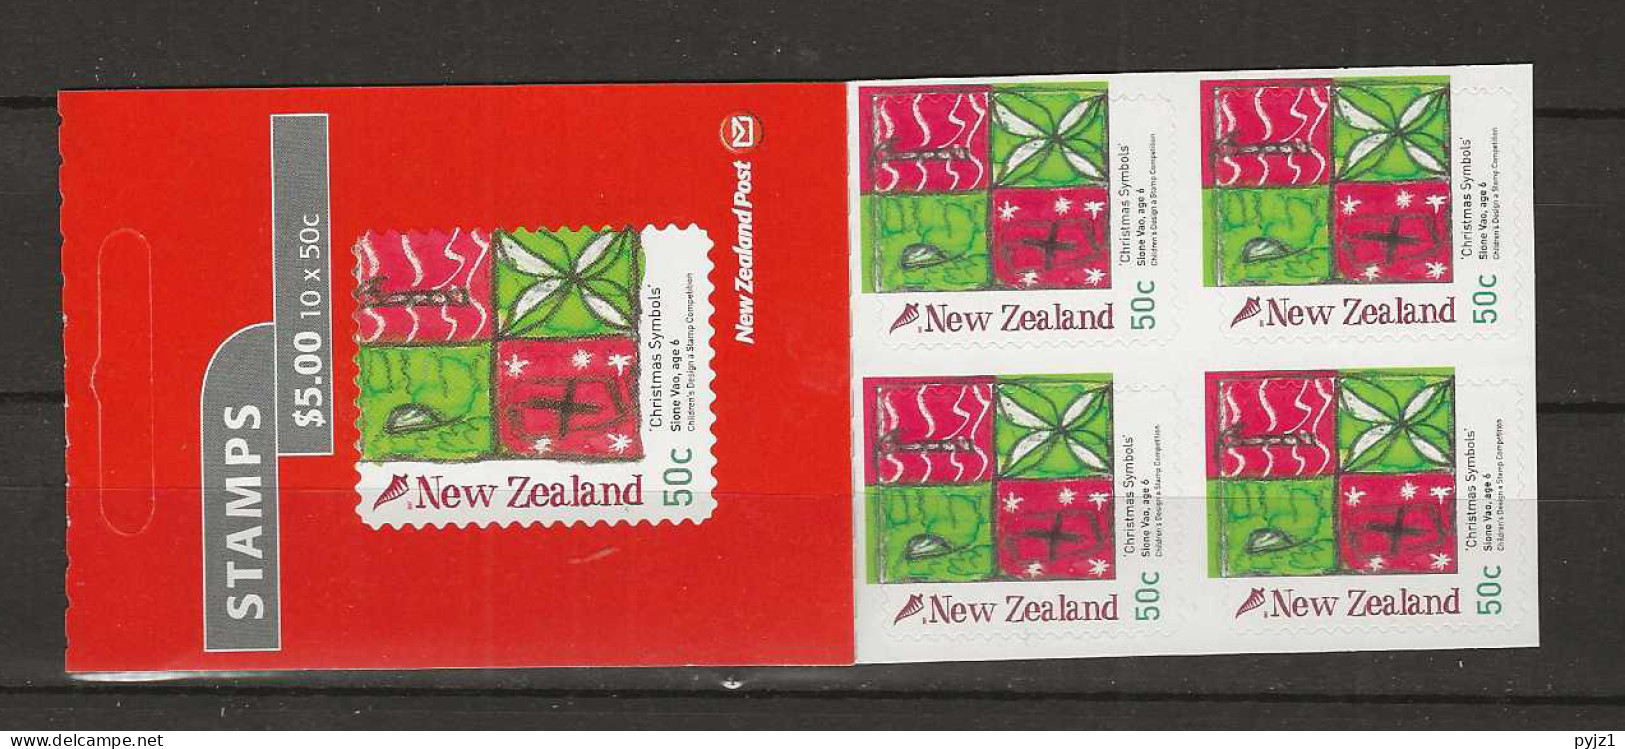 2007 MNH New Zealand Booklet Mi 2462 Postfris** - Postzegelboekjes